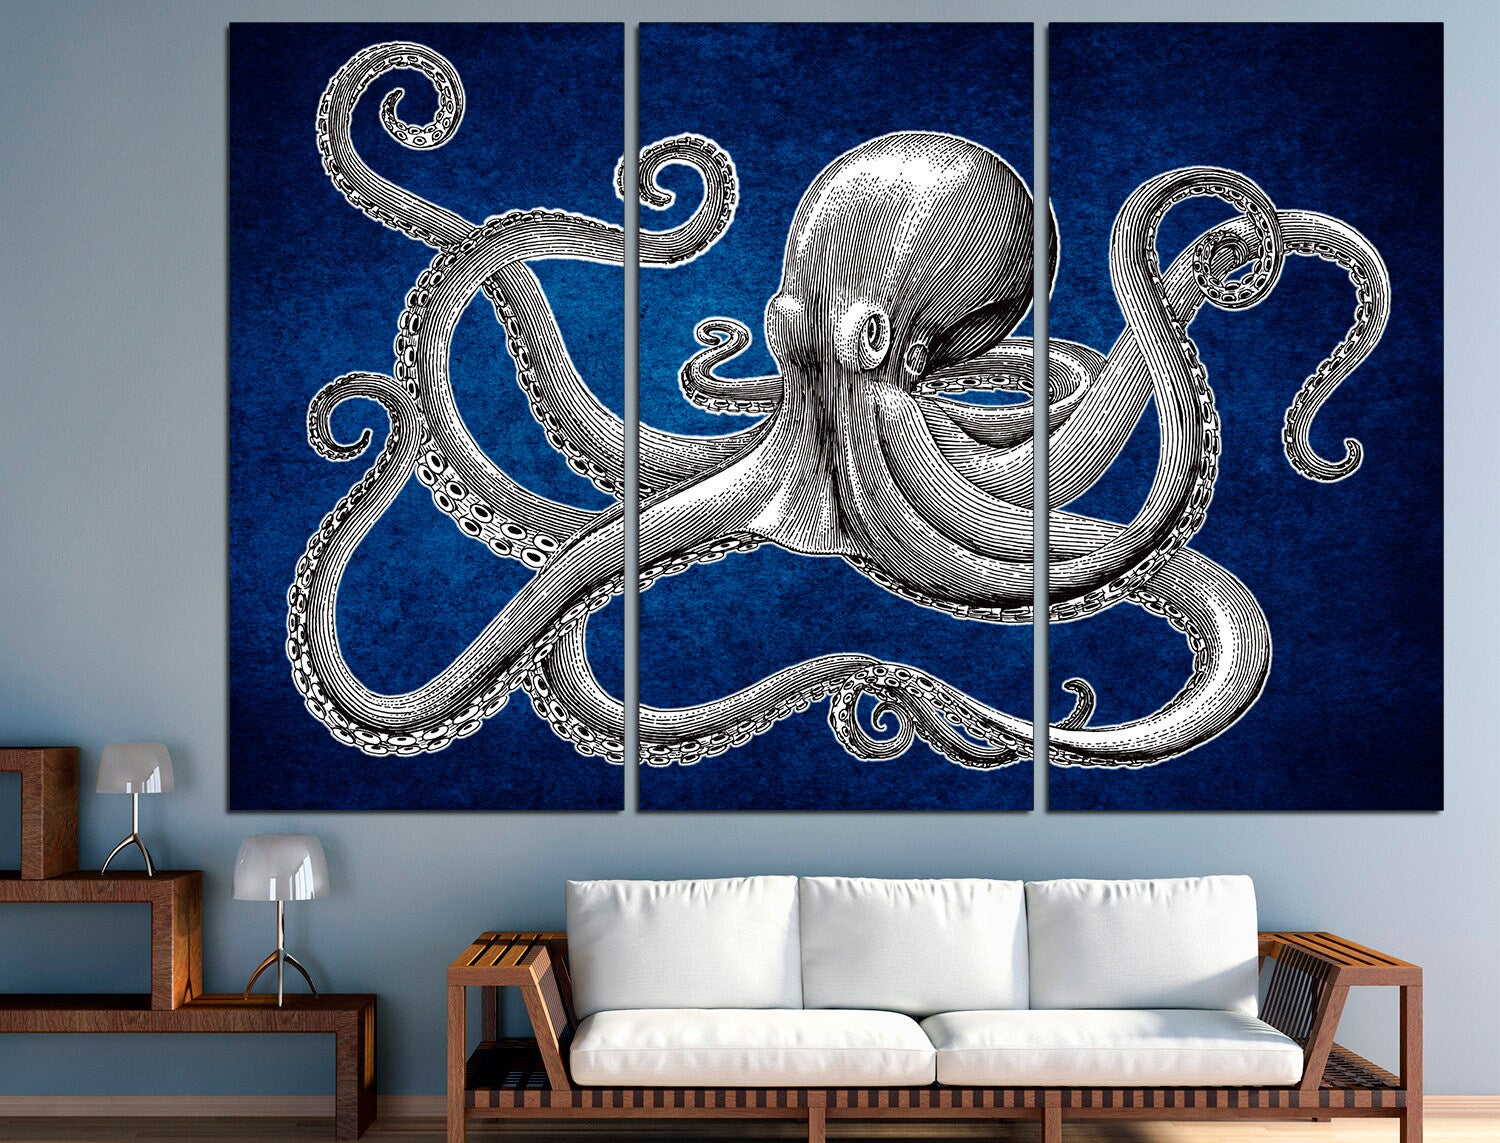 Octopus wall art Kraken art Nautical wall decor, Octopus art print Octopus home decor Octopus lover gift